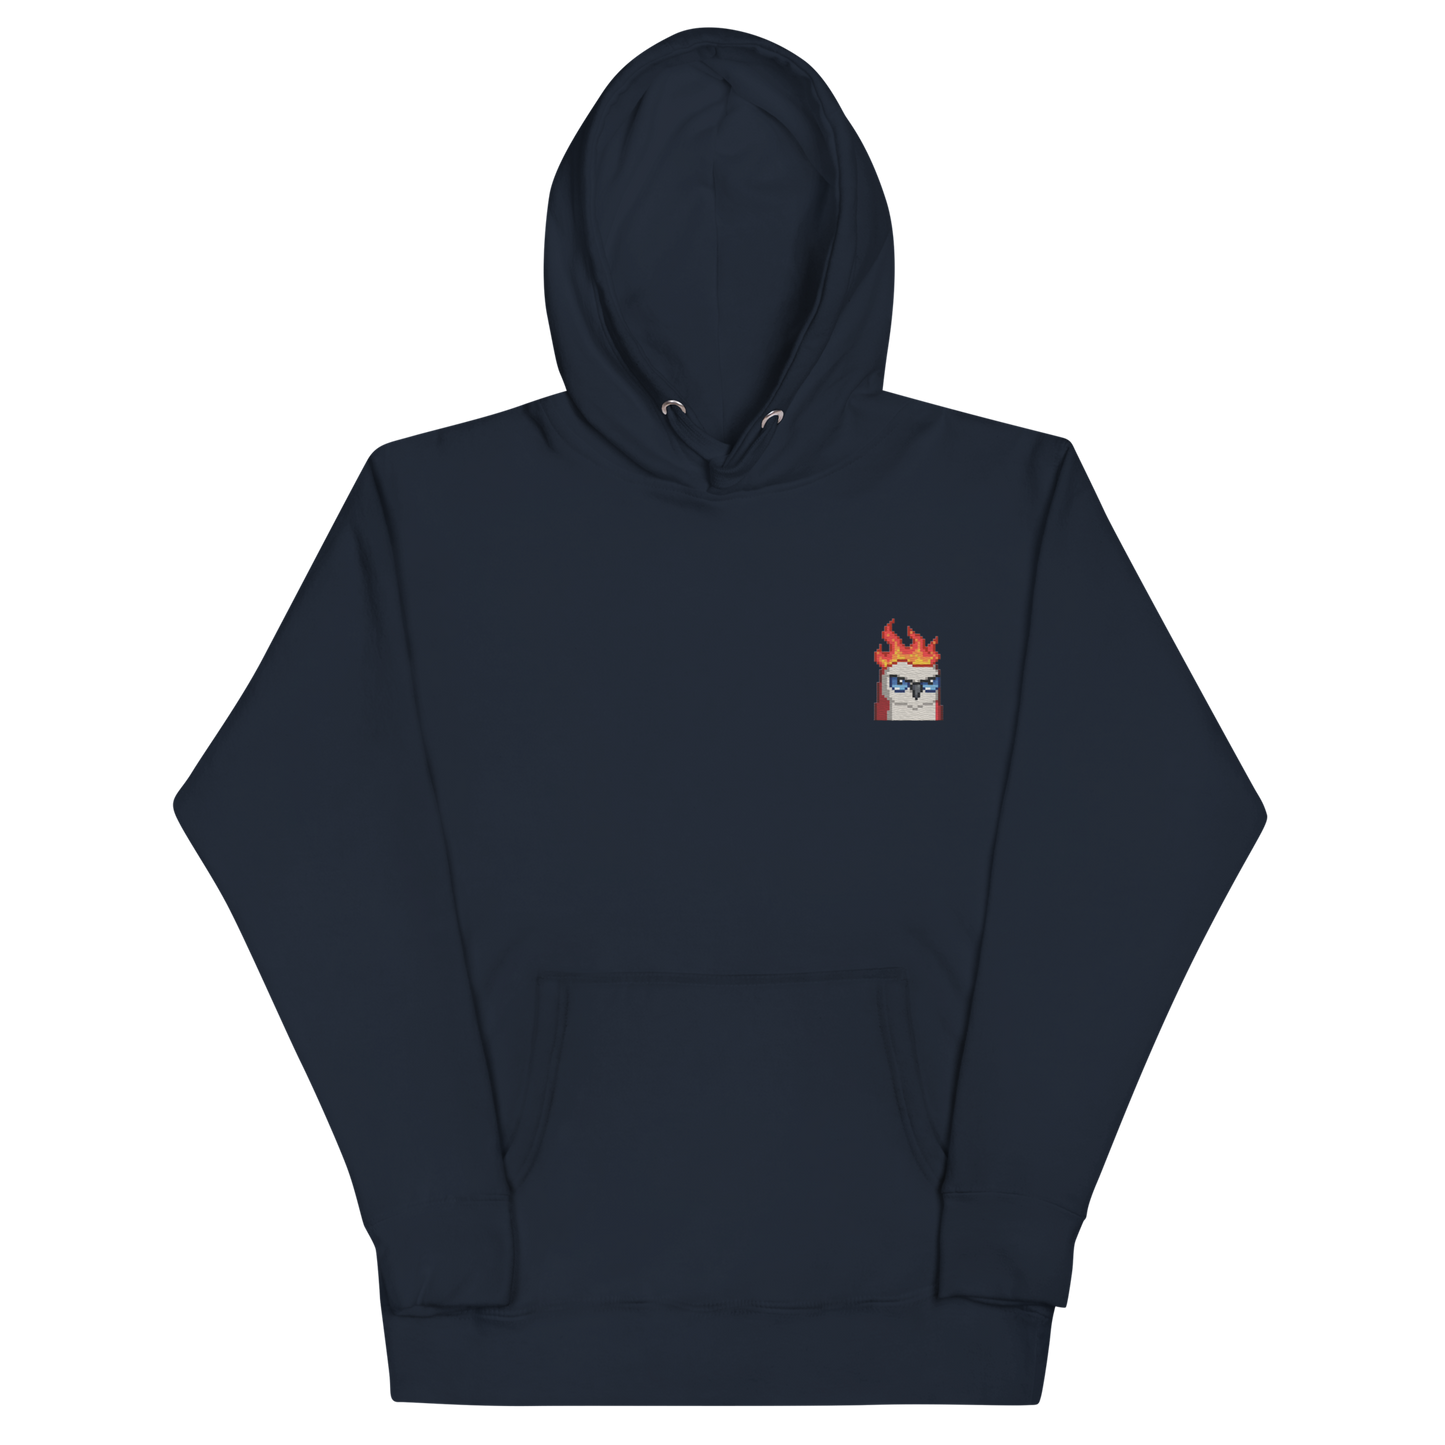 moonbird hoodie